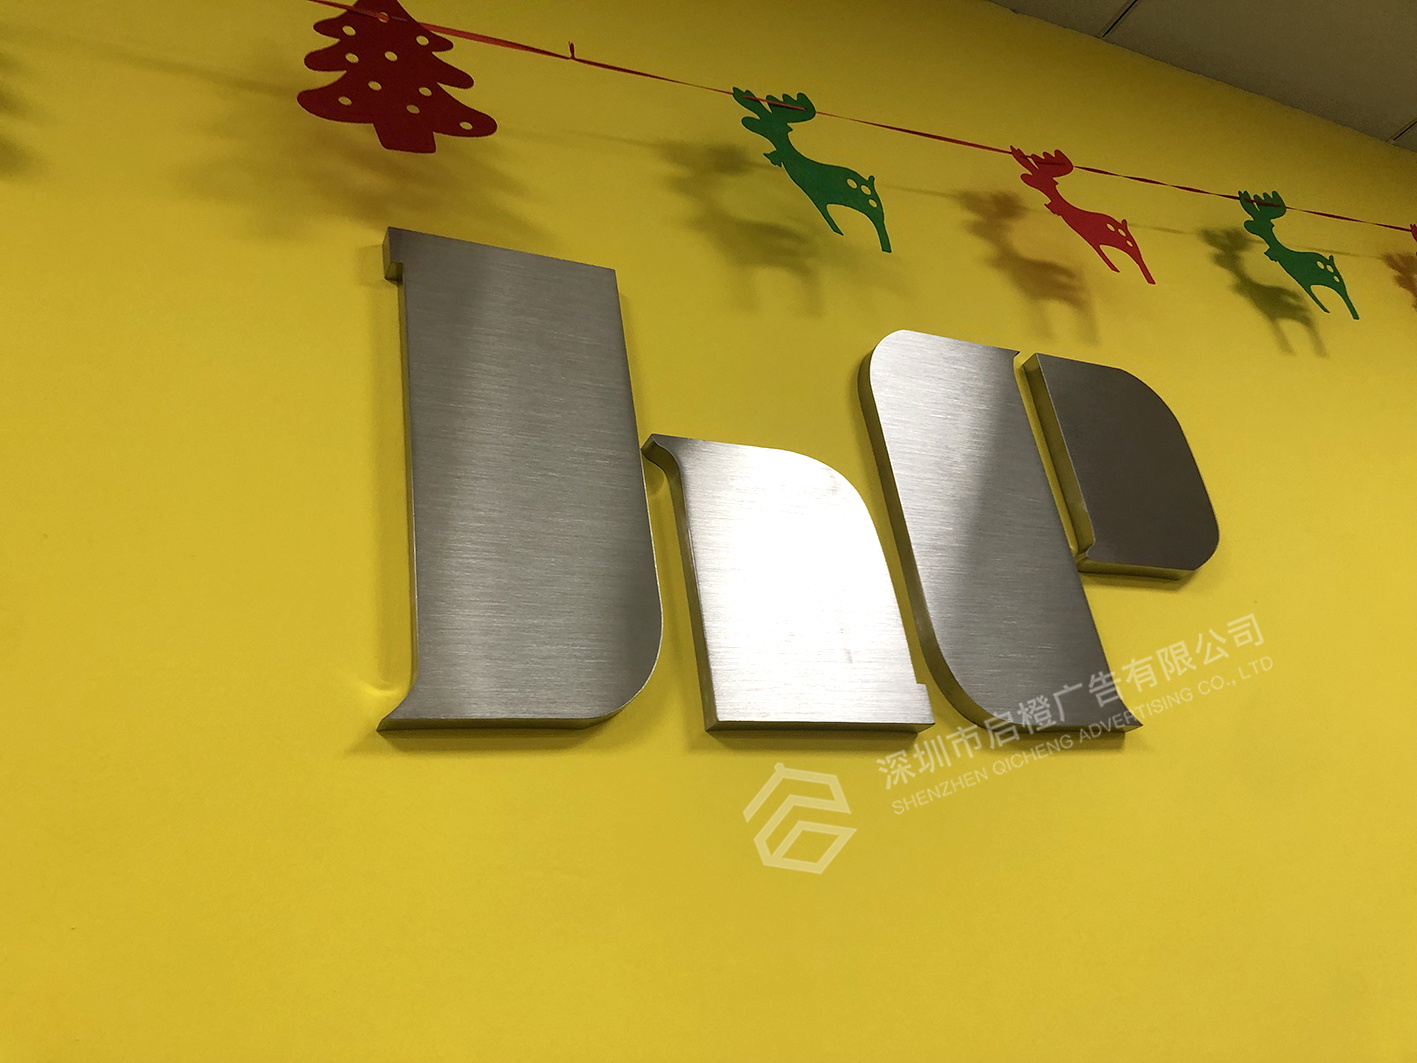 金豪彩色印刷公司前台不锈钢字logo墙(图3)